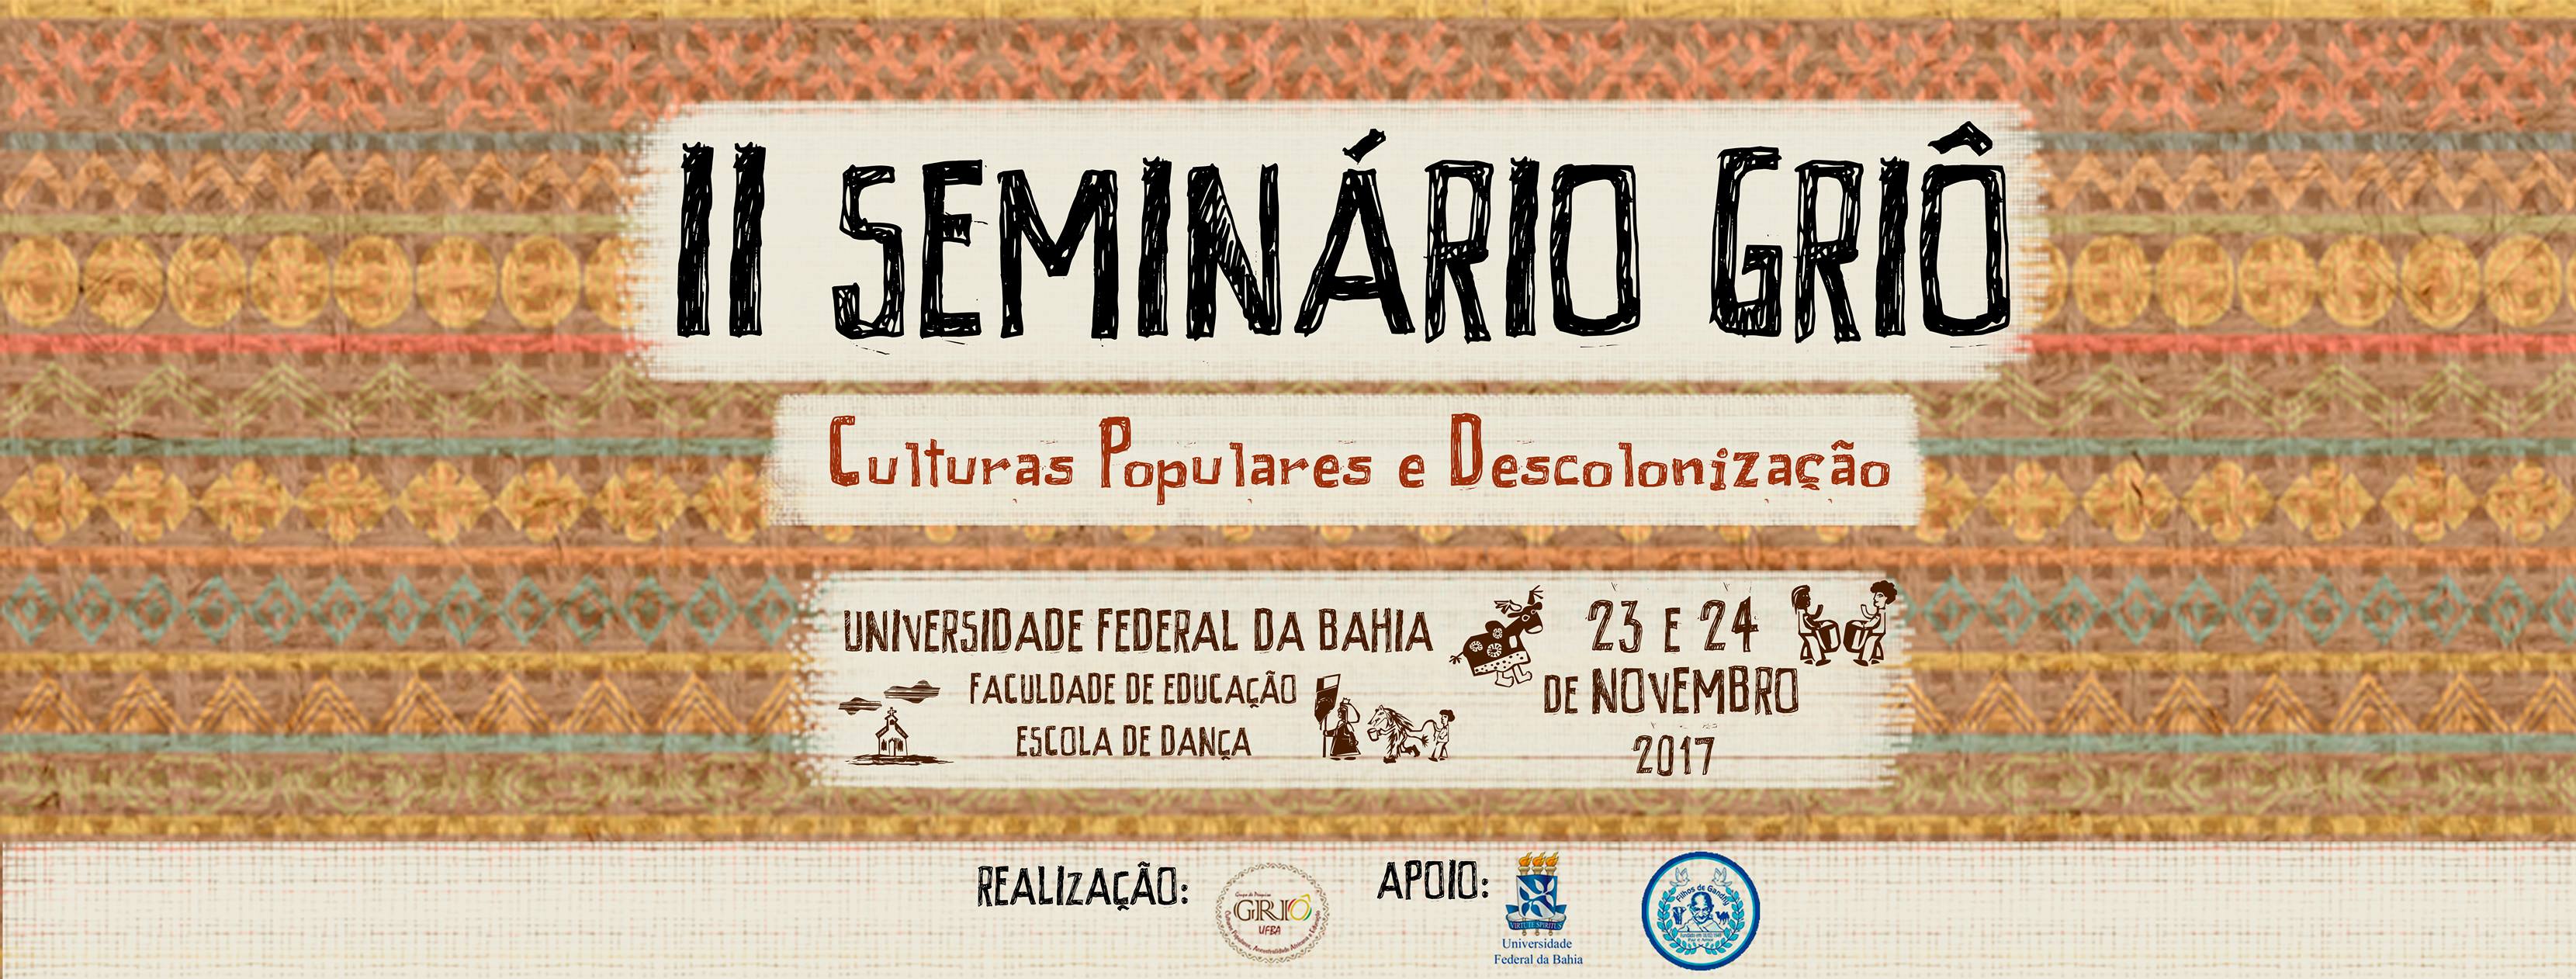 II Seminário Griô Culturas Populares e Descolonização